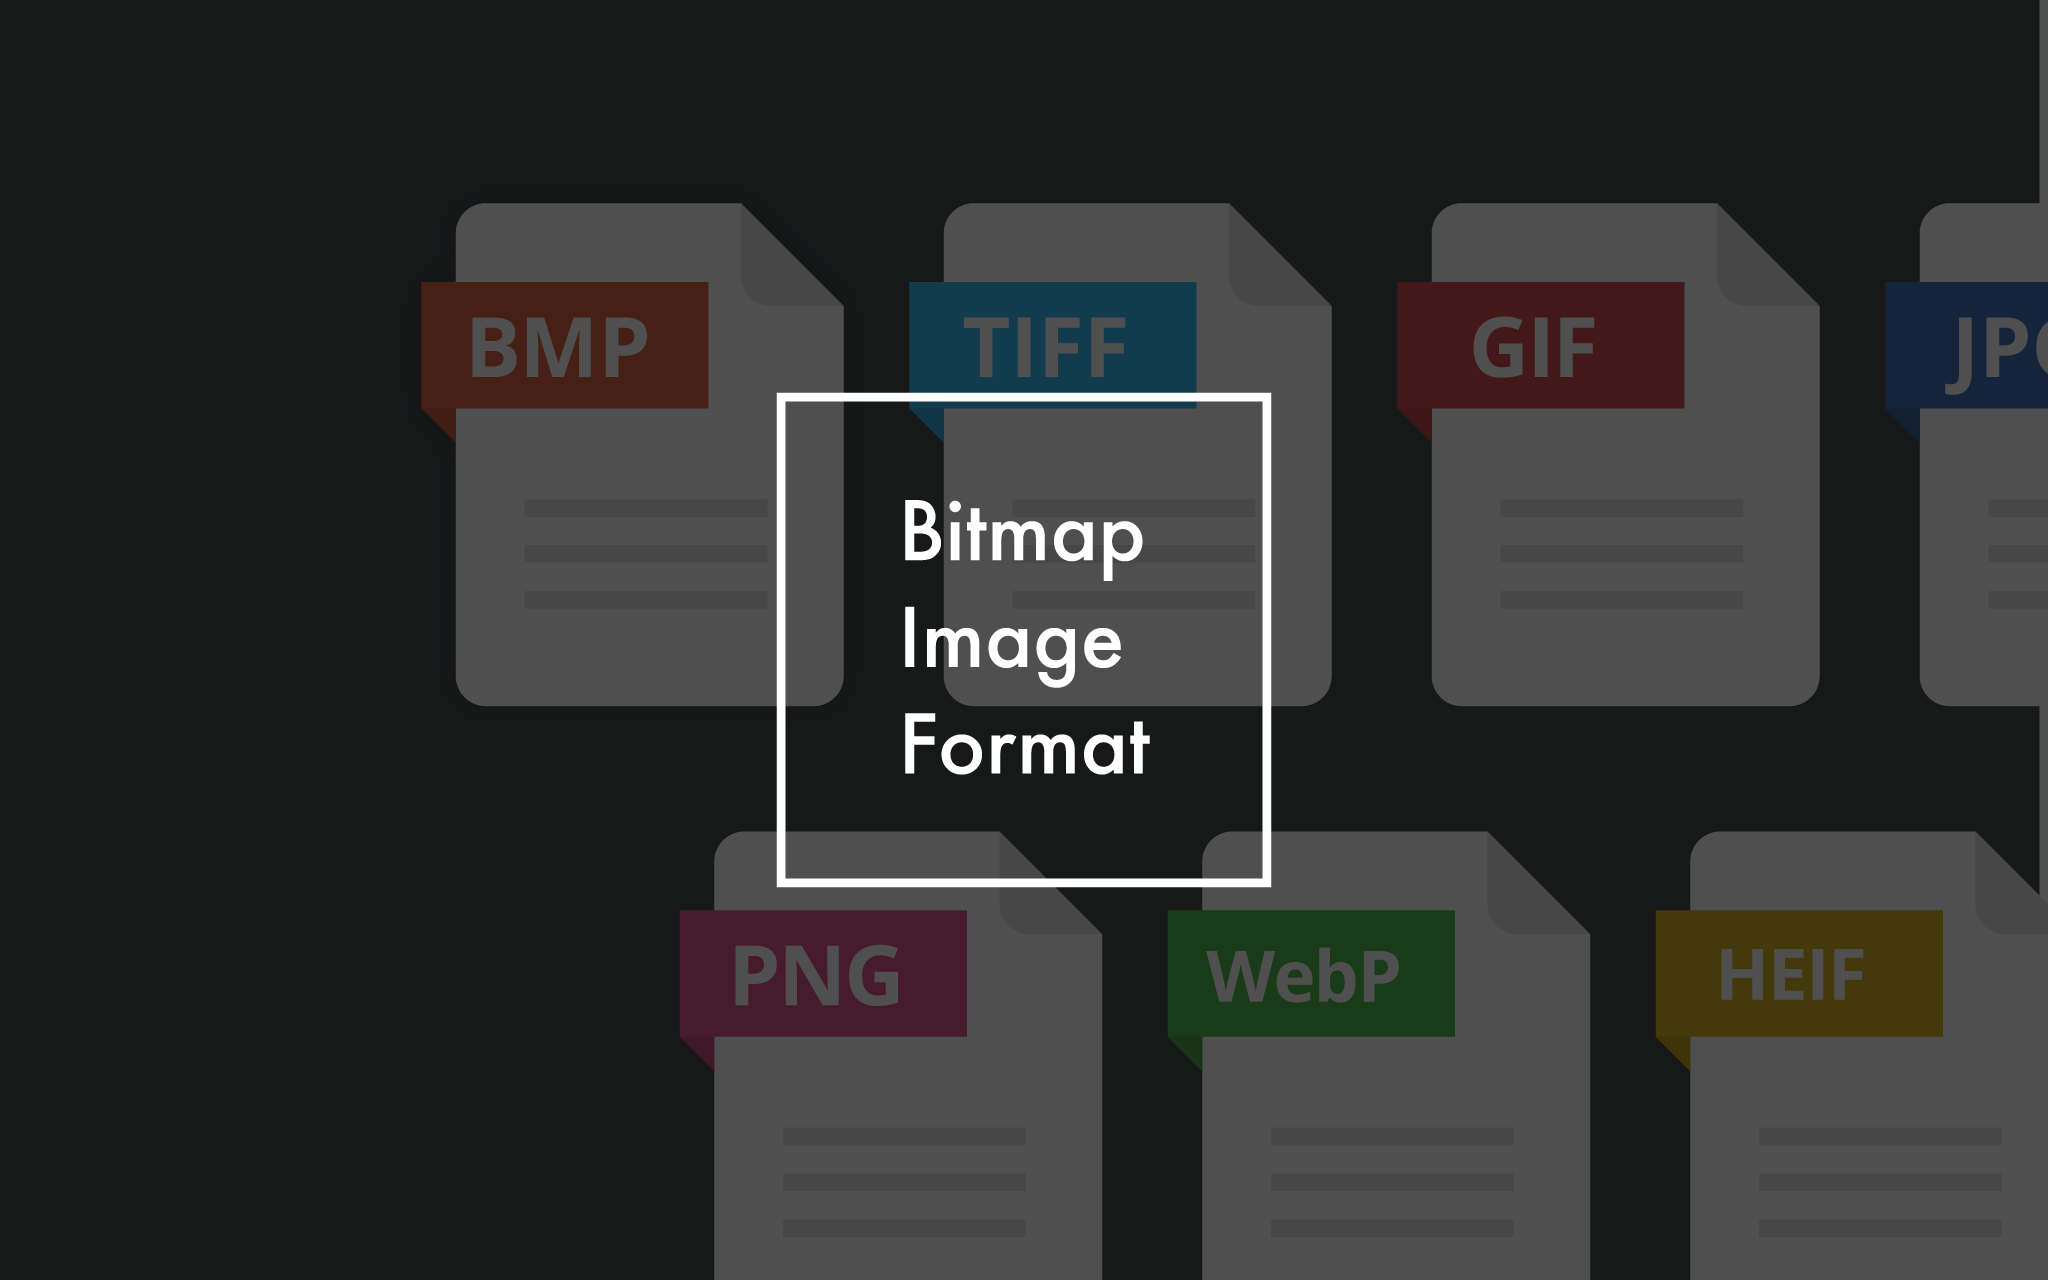 Jpg Png Gif Bmp Tiff Webp Heif ビットマップ系画像フォーマットを歴史的背景を交えて比較 Lovemac Jp